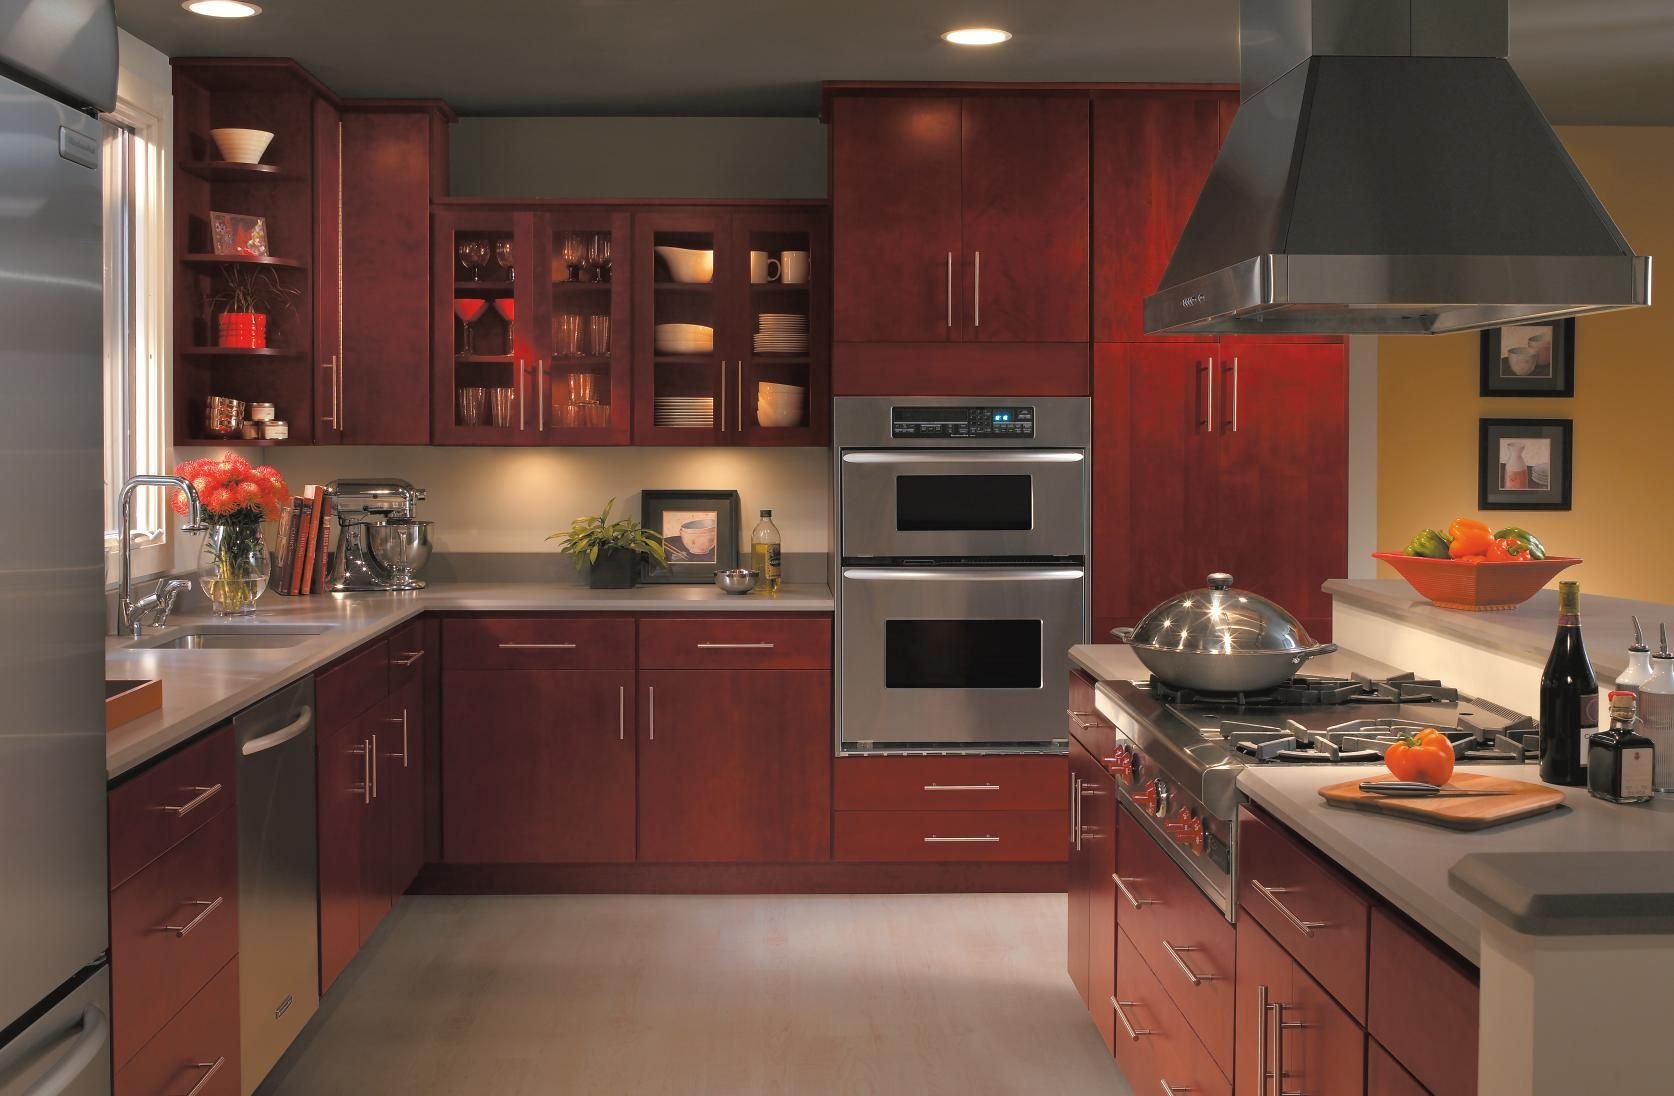 Бордовая кухня: фото идей дизайна интерьера и гарнитура, цвета-компаньоны, выбор обоев